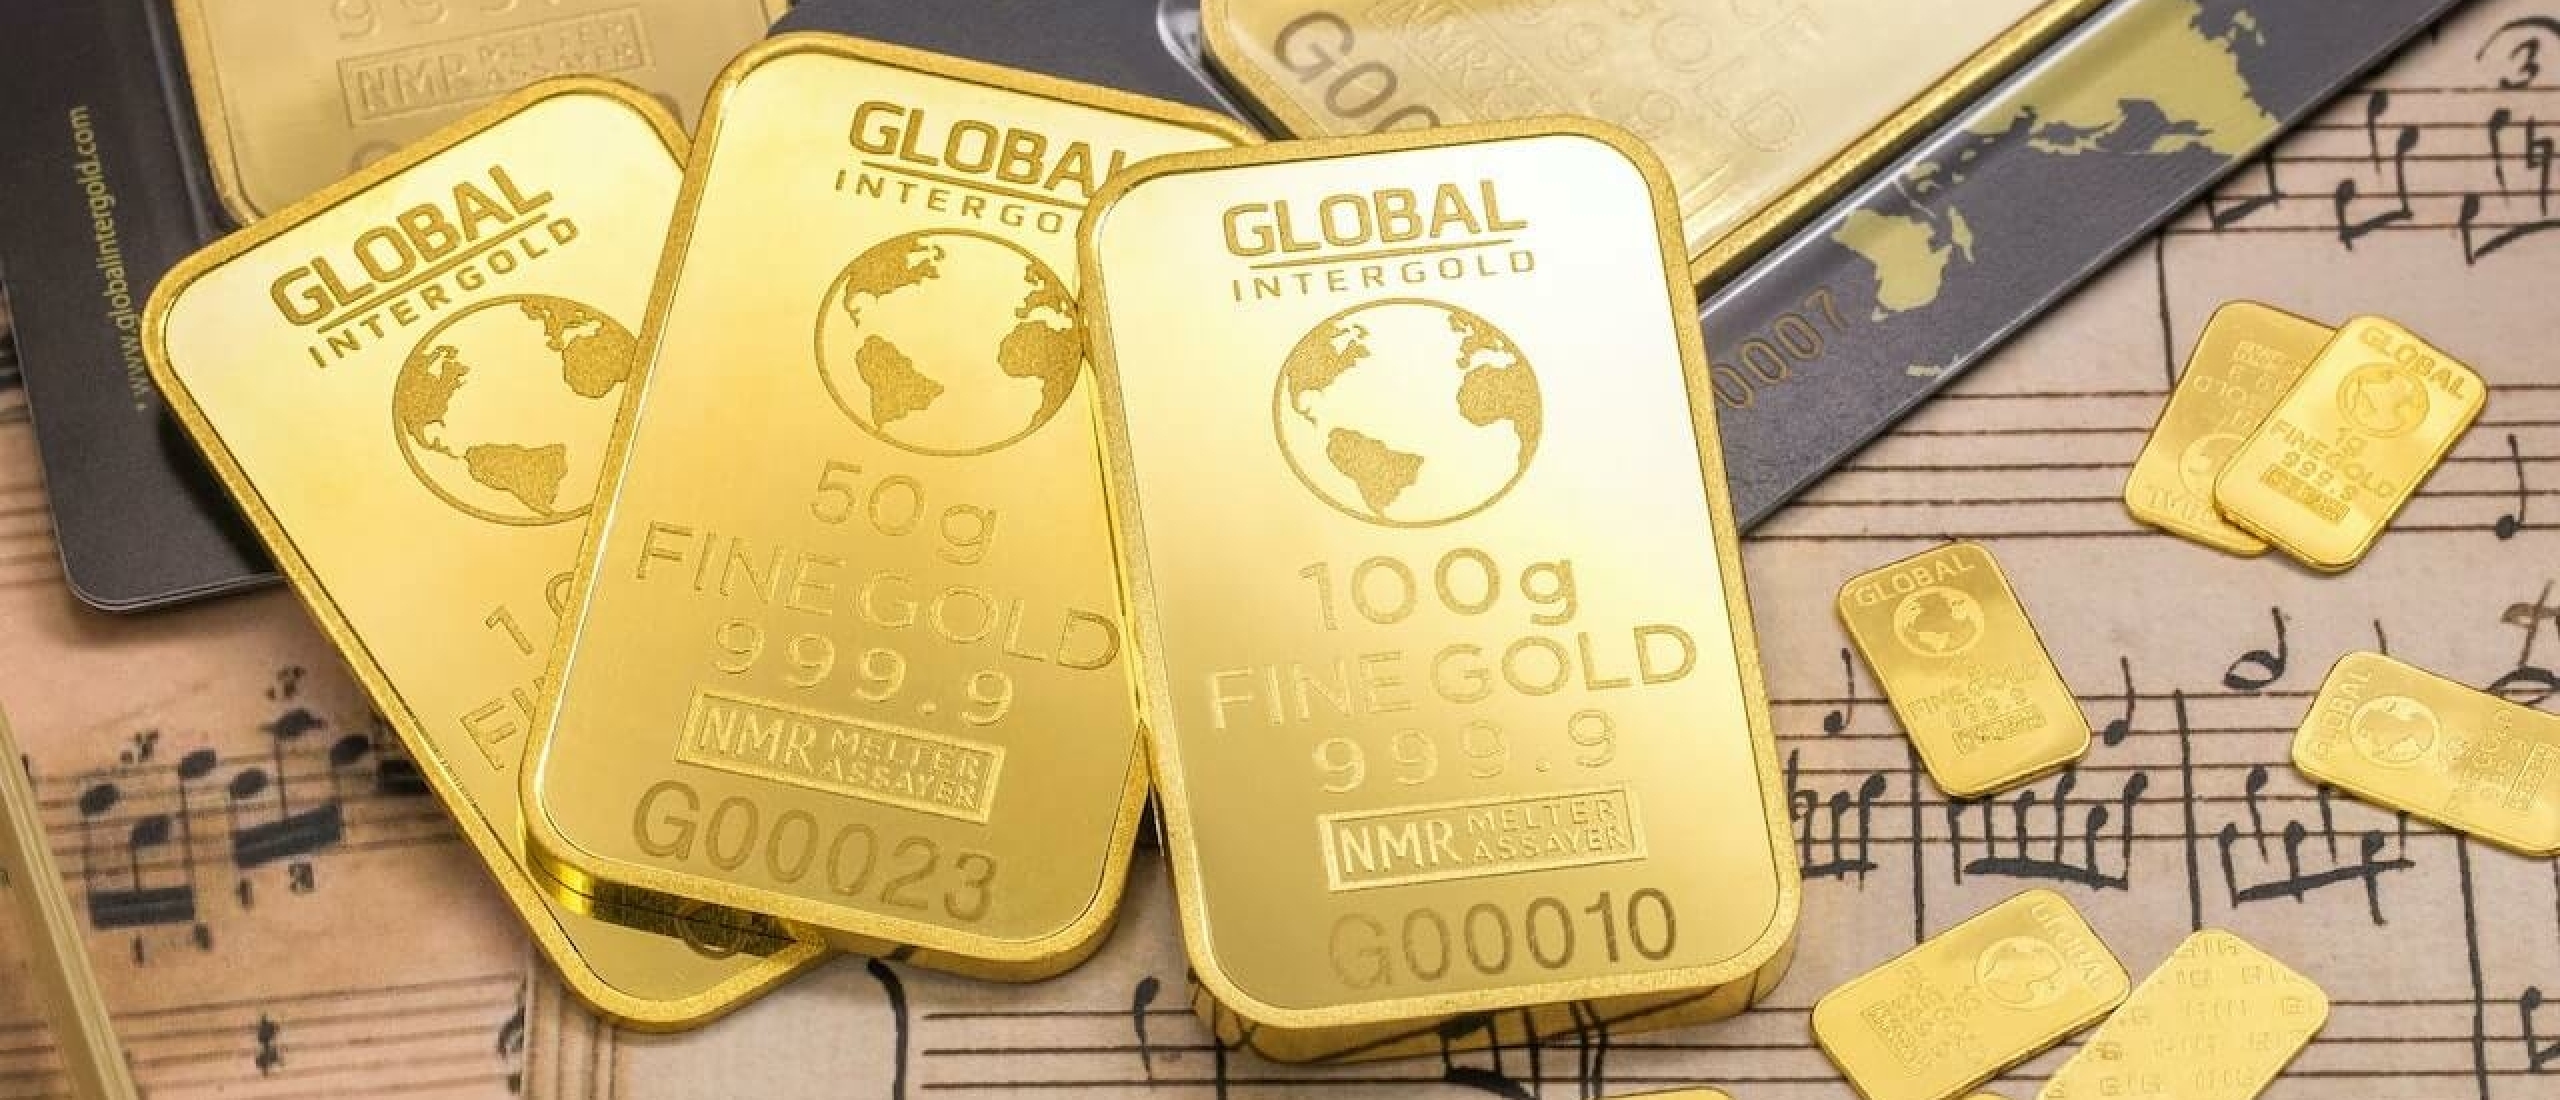 10 redenen waarom je nu in ETF goud zou moeten investeren